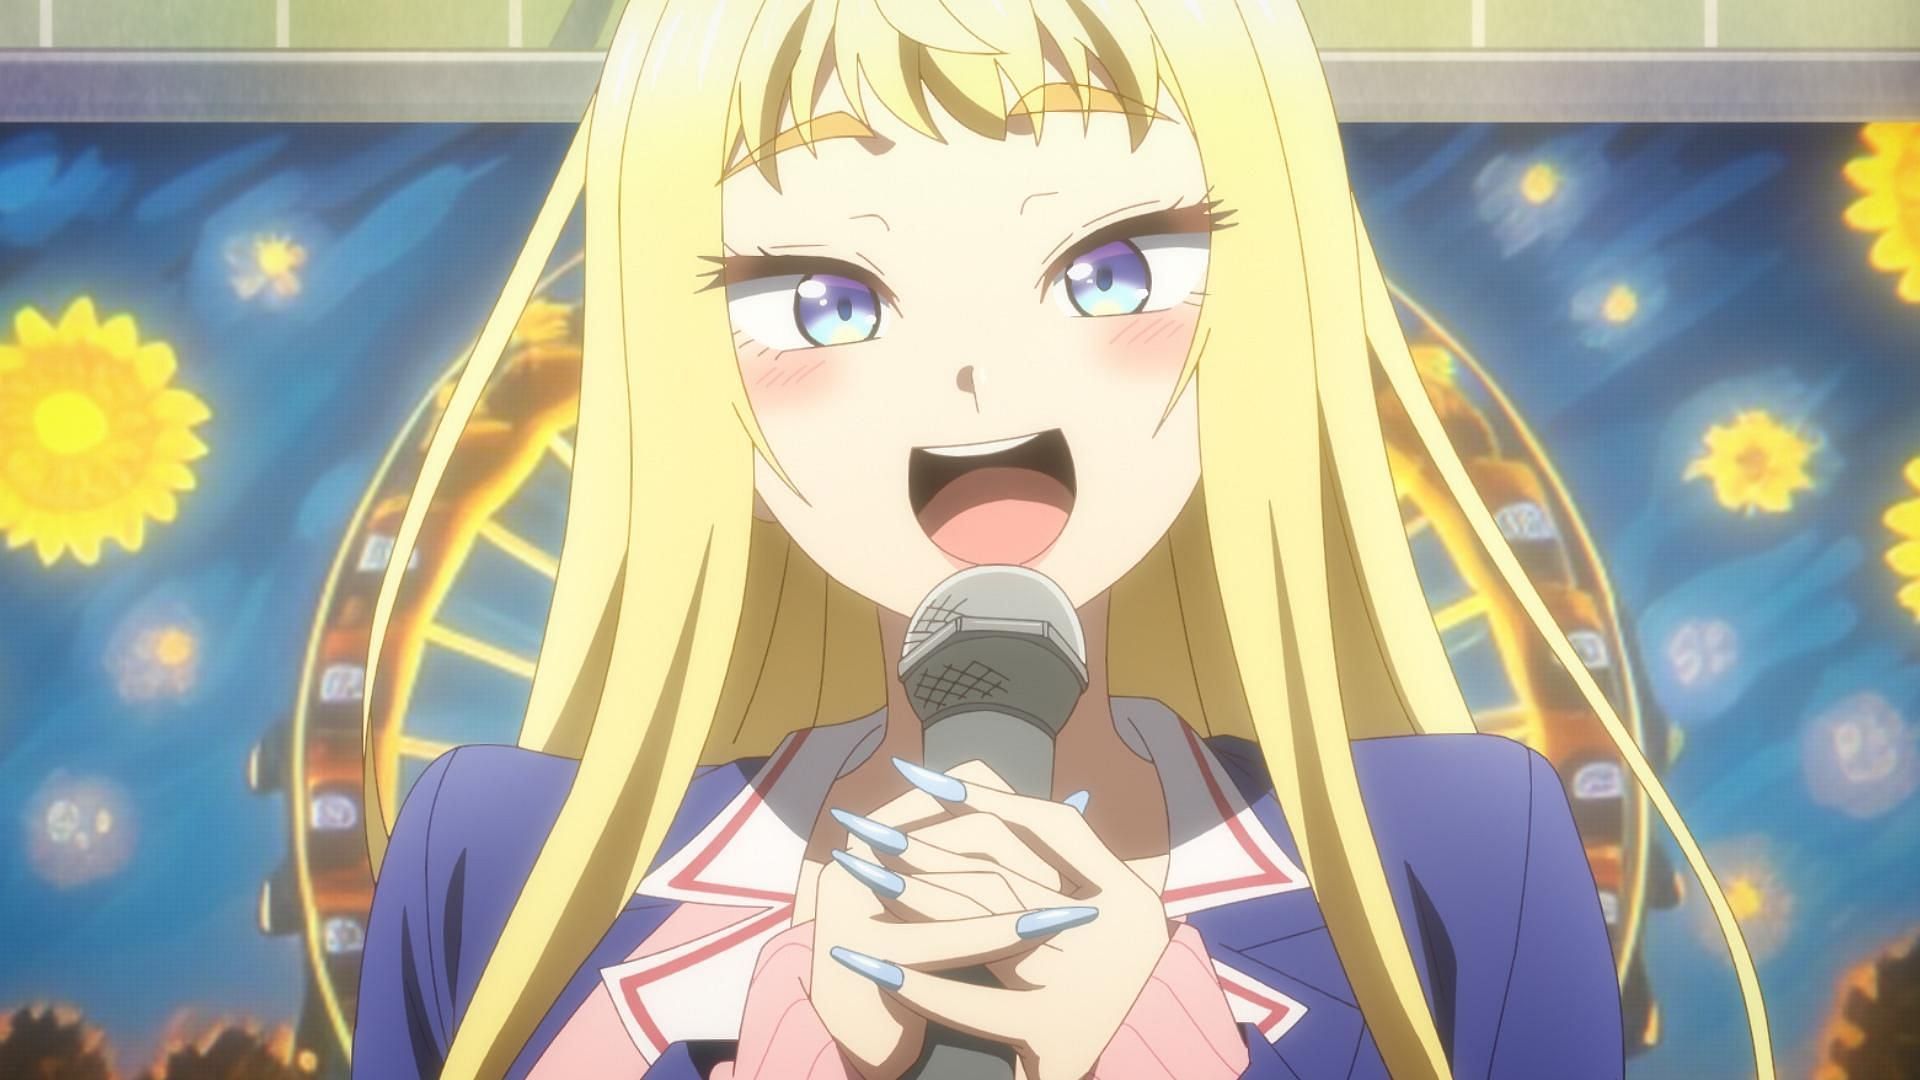 Minami singing at the Karaoke (Image via Silver Link and Blade)